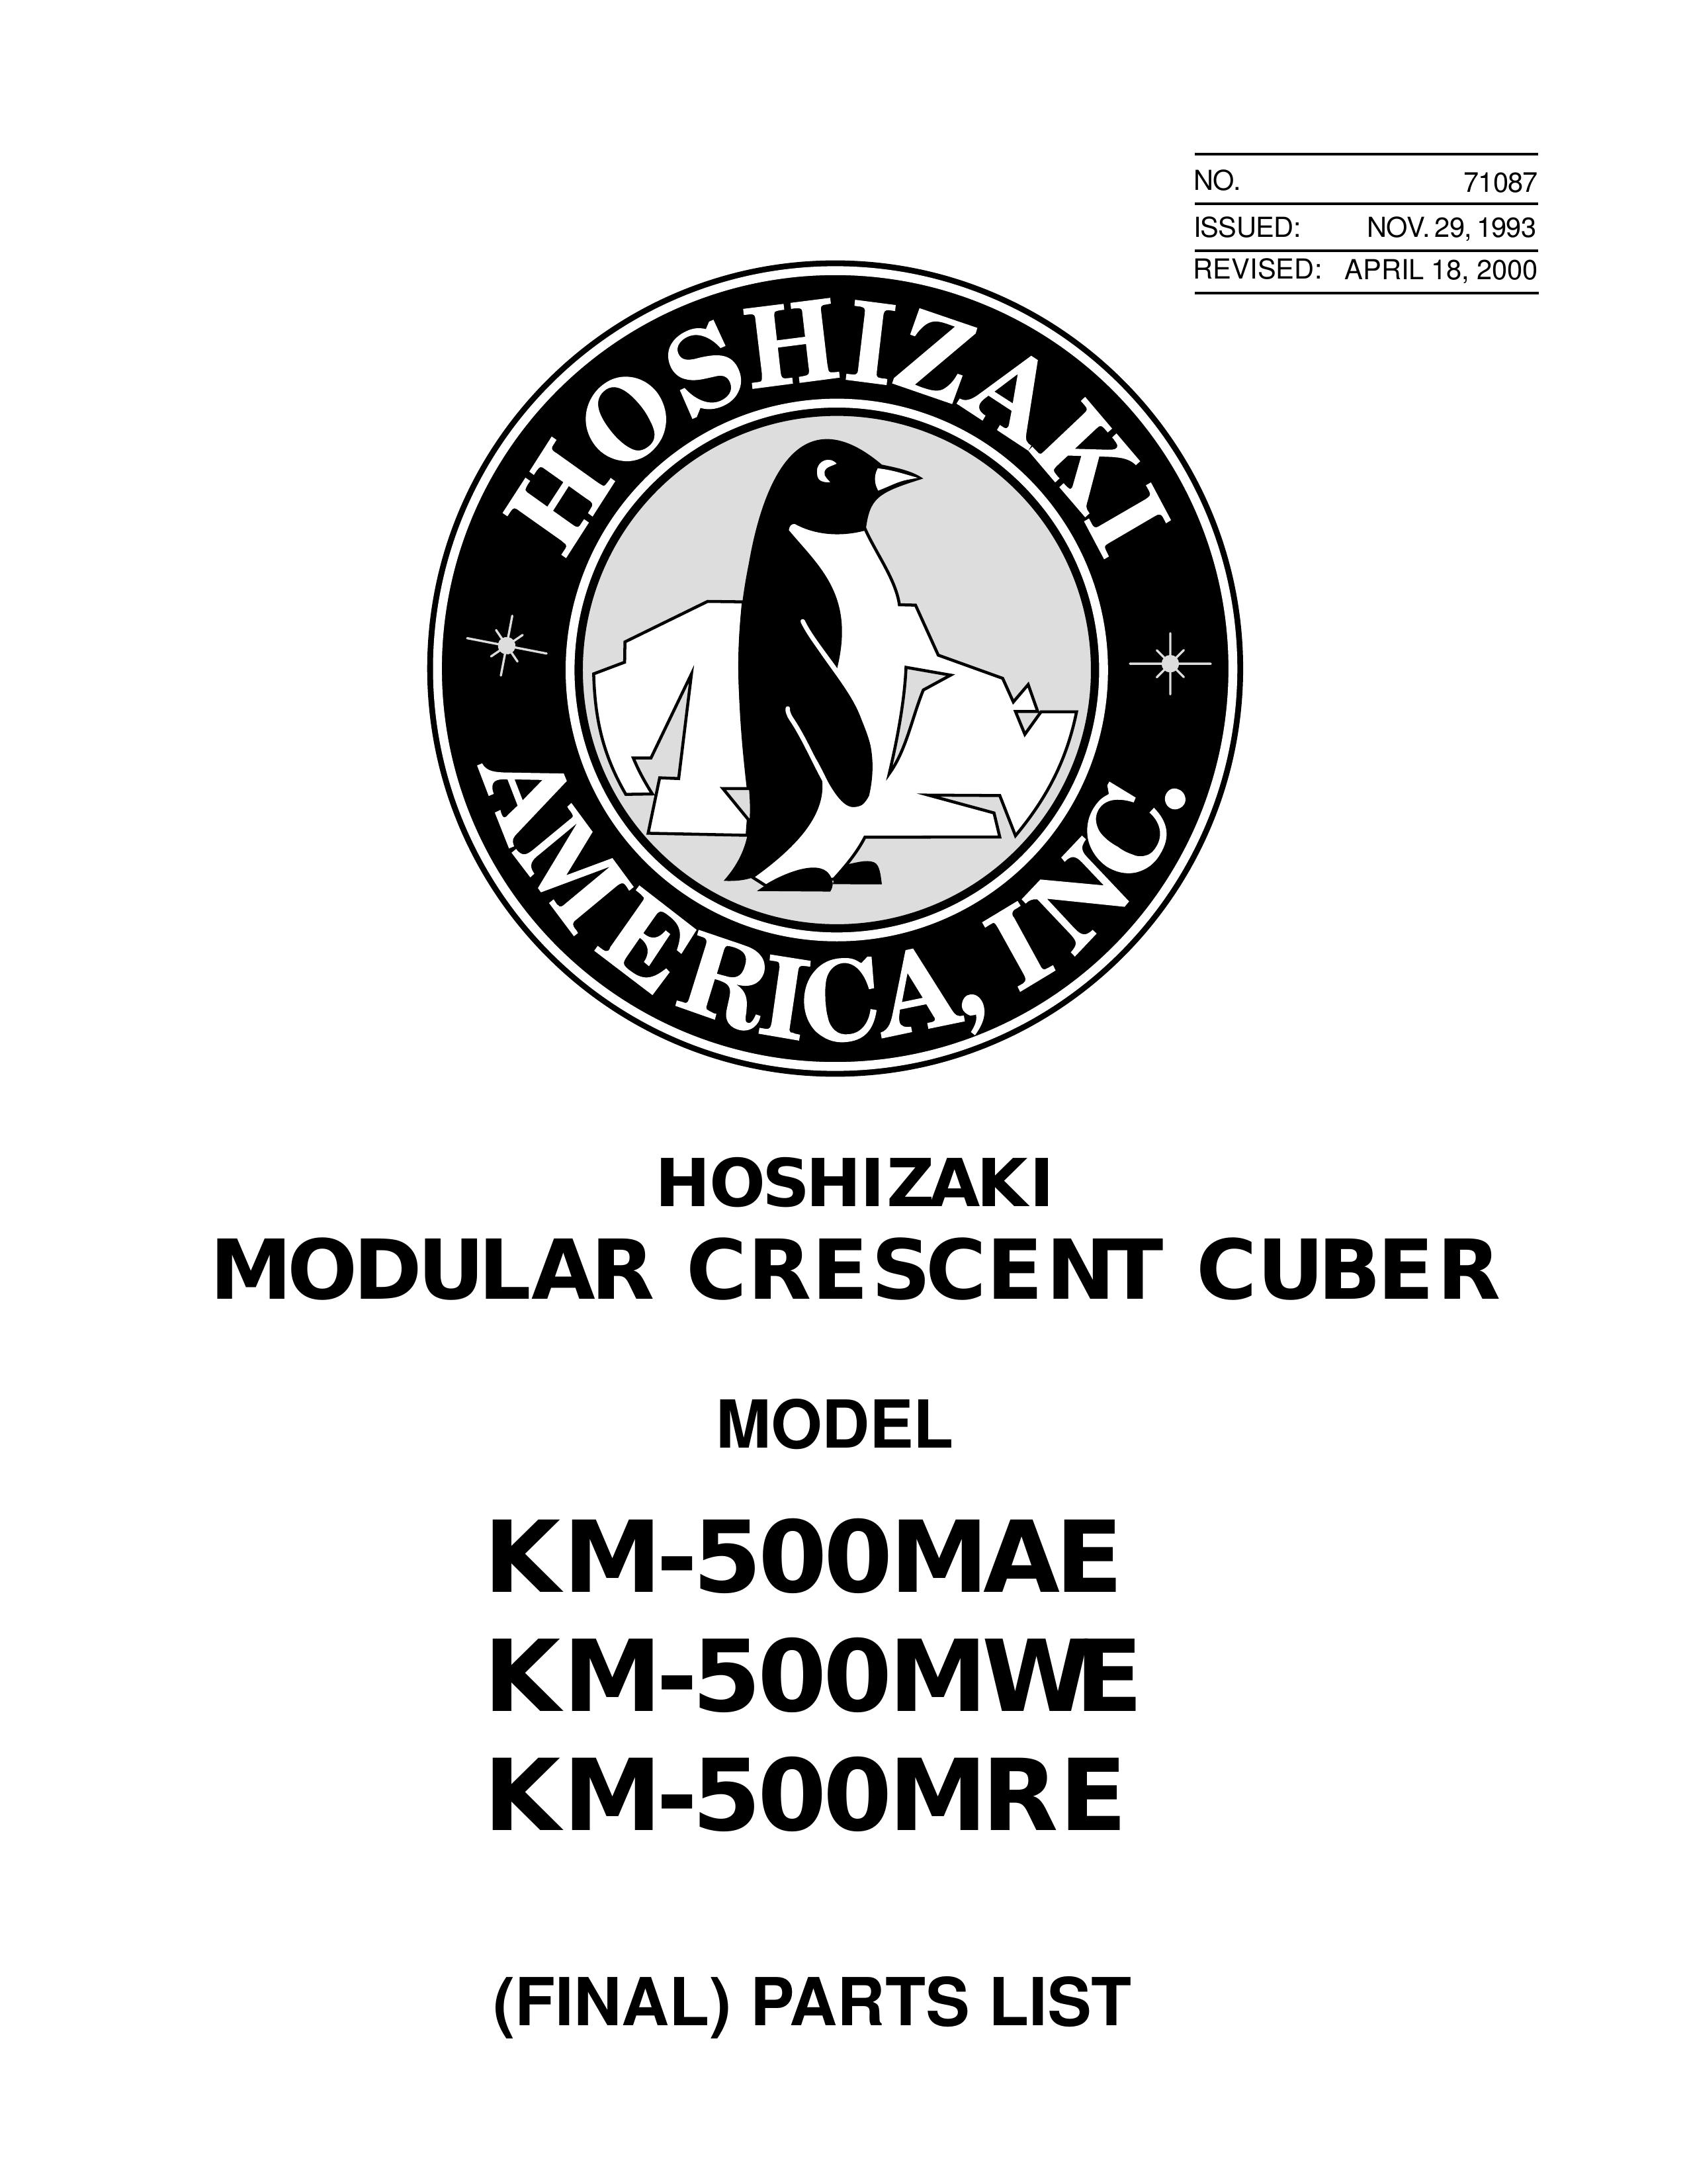 Hoshizaki KM-500MWE Scuba Diving Equipment User Manual